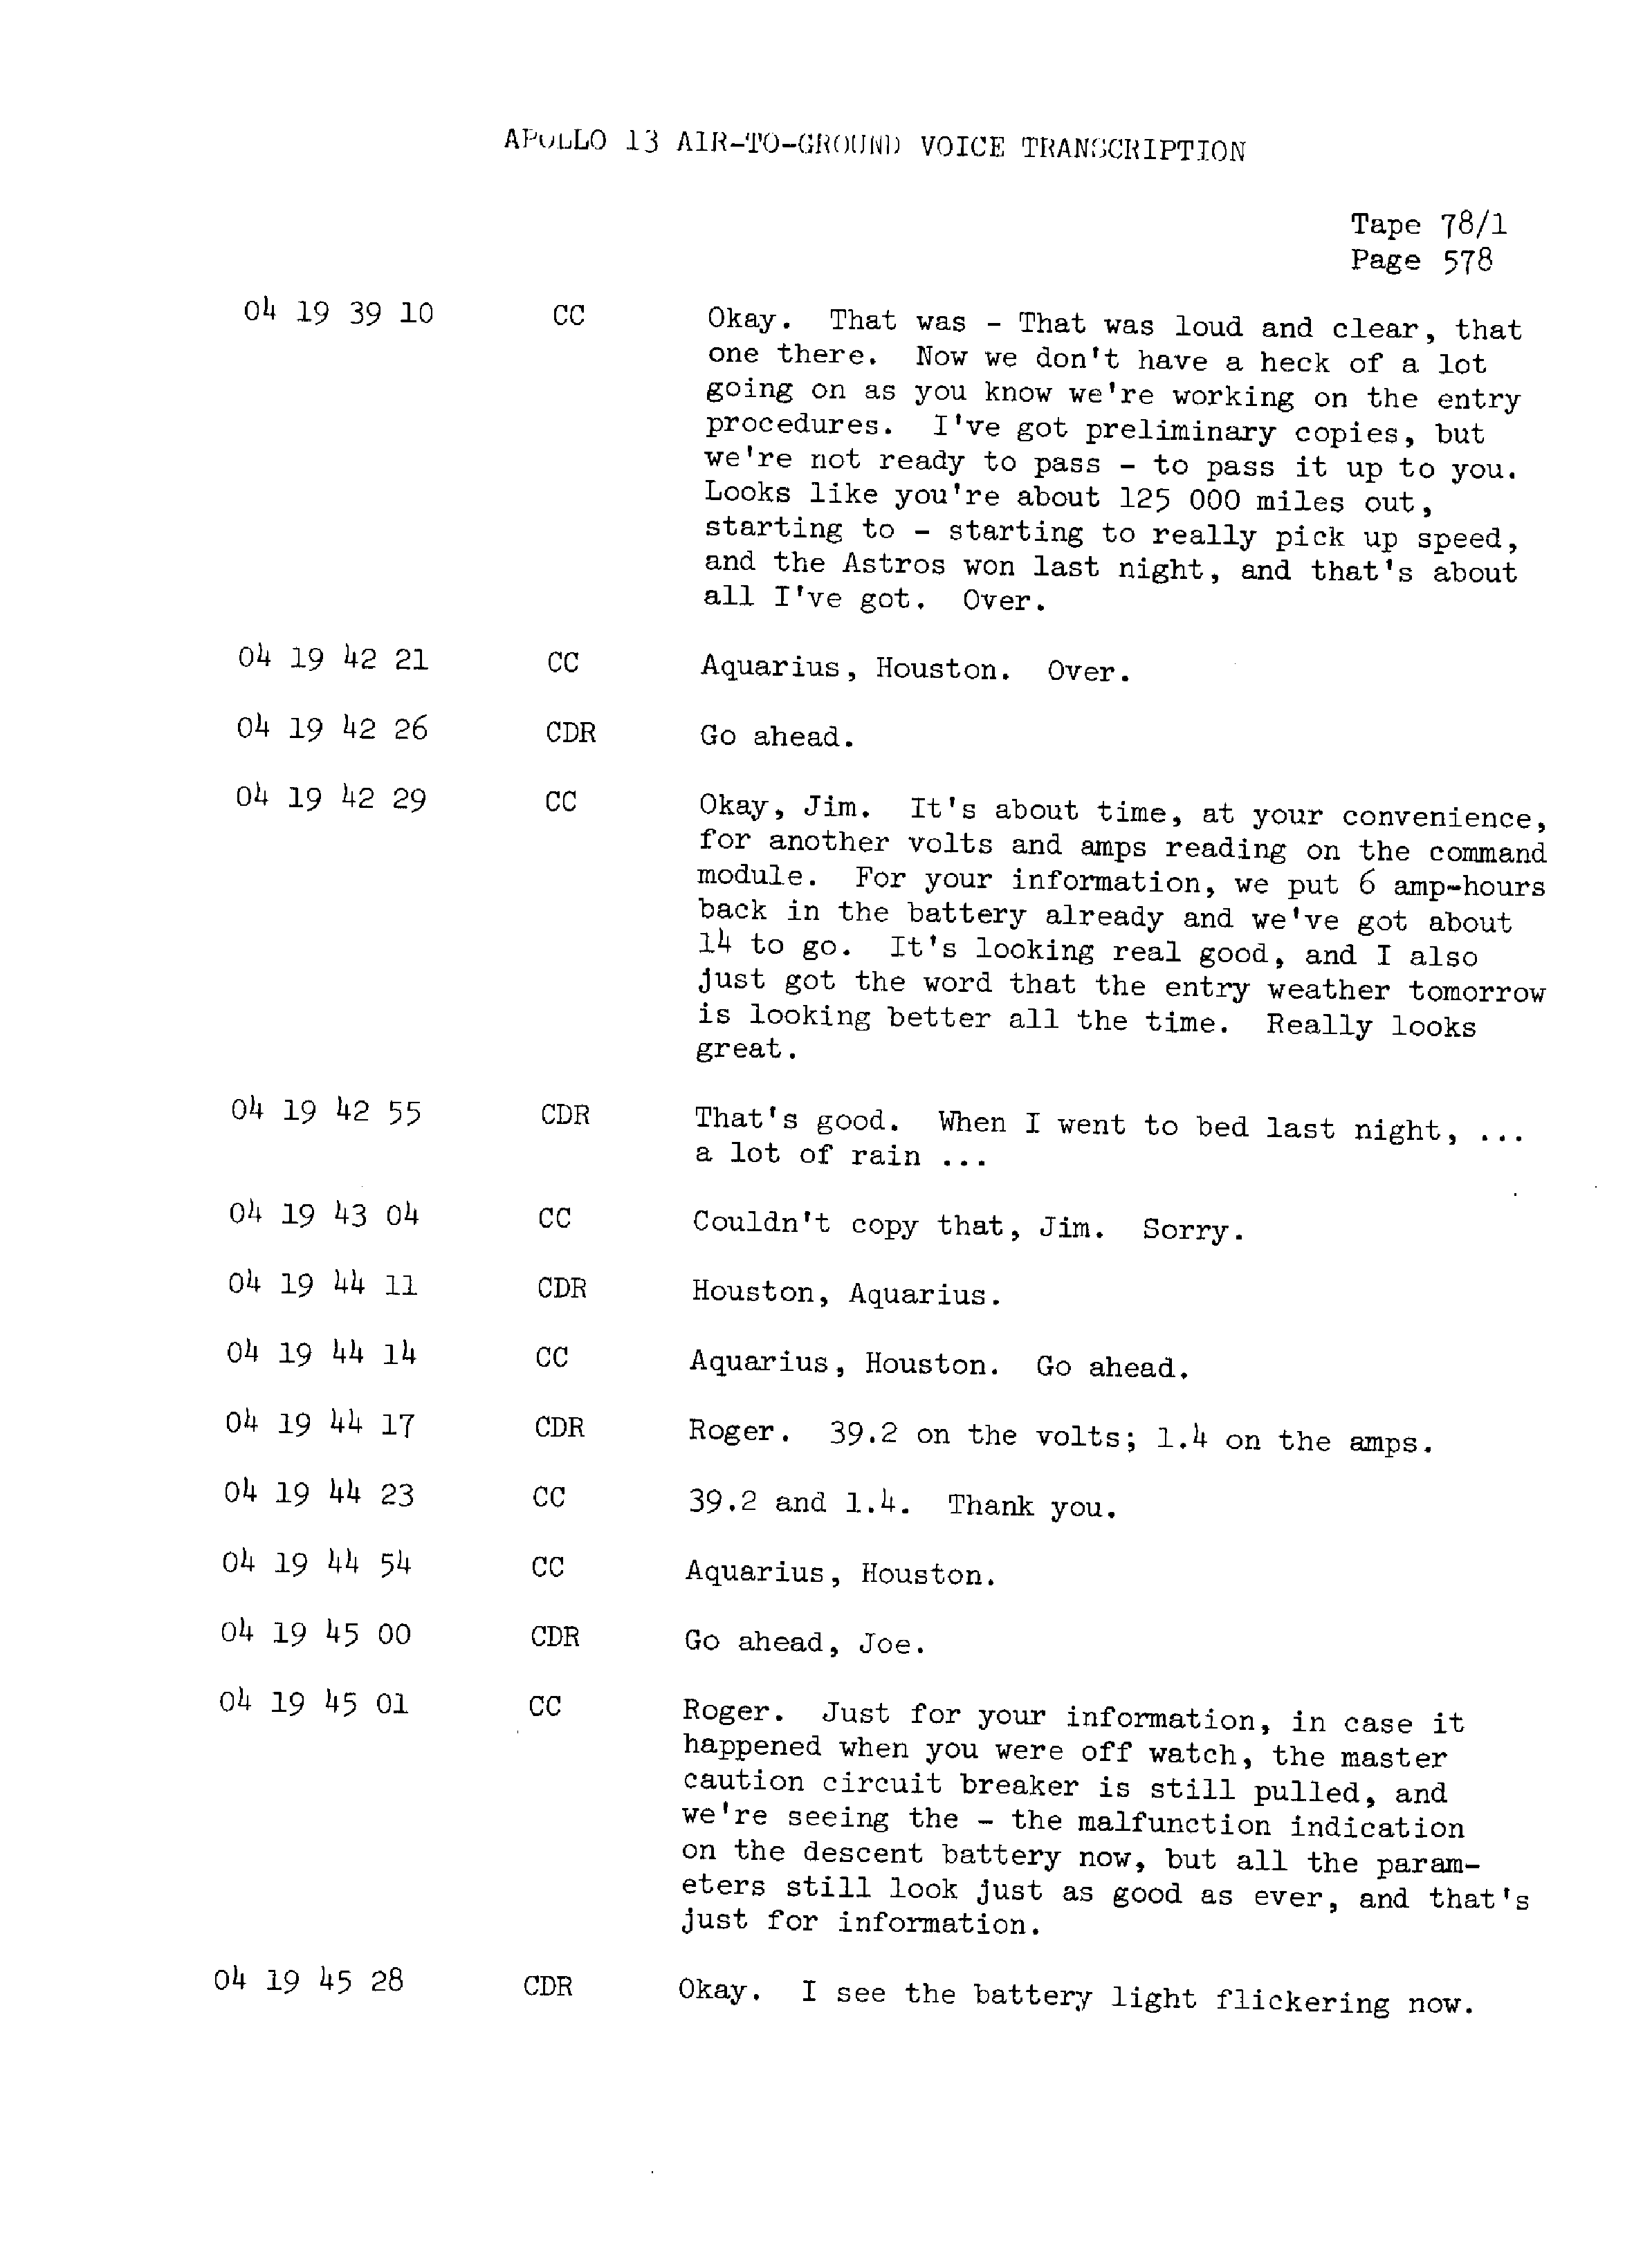 Page 585 of Apollo 13’s original transcript